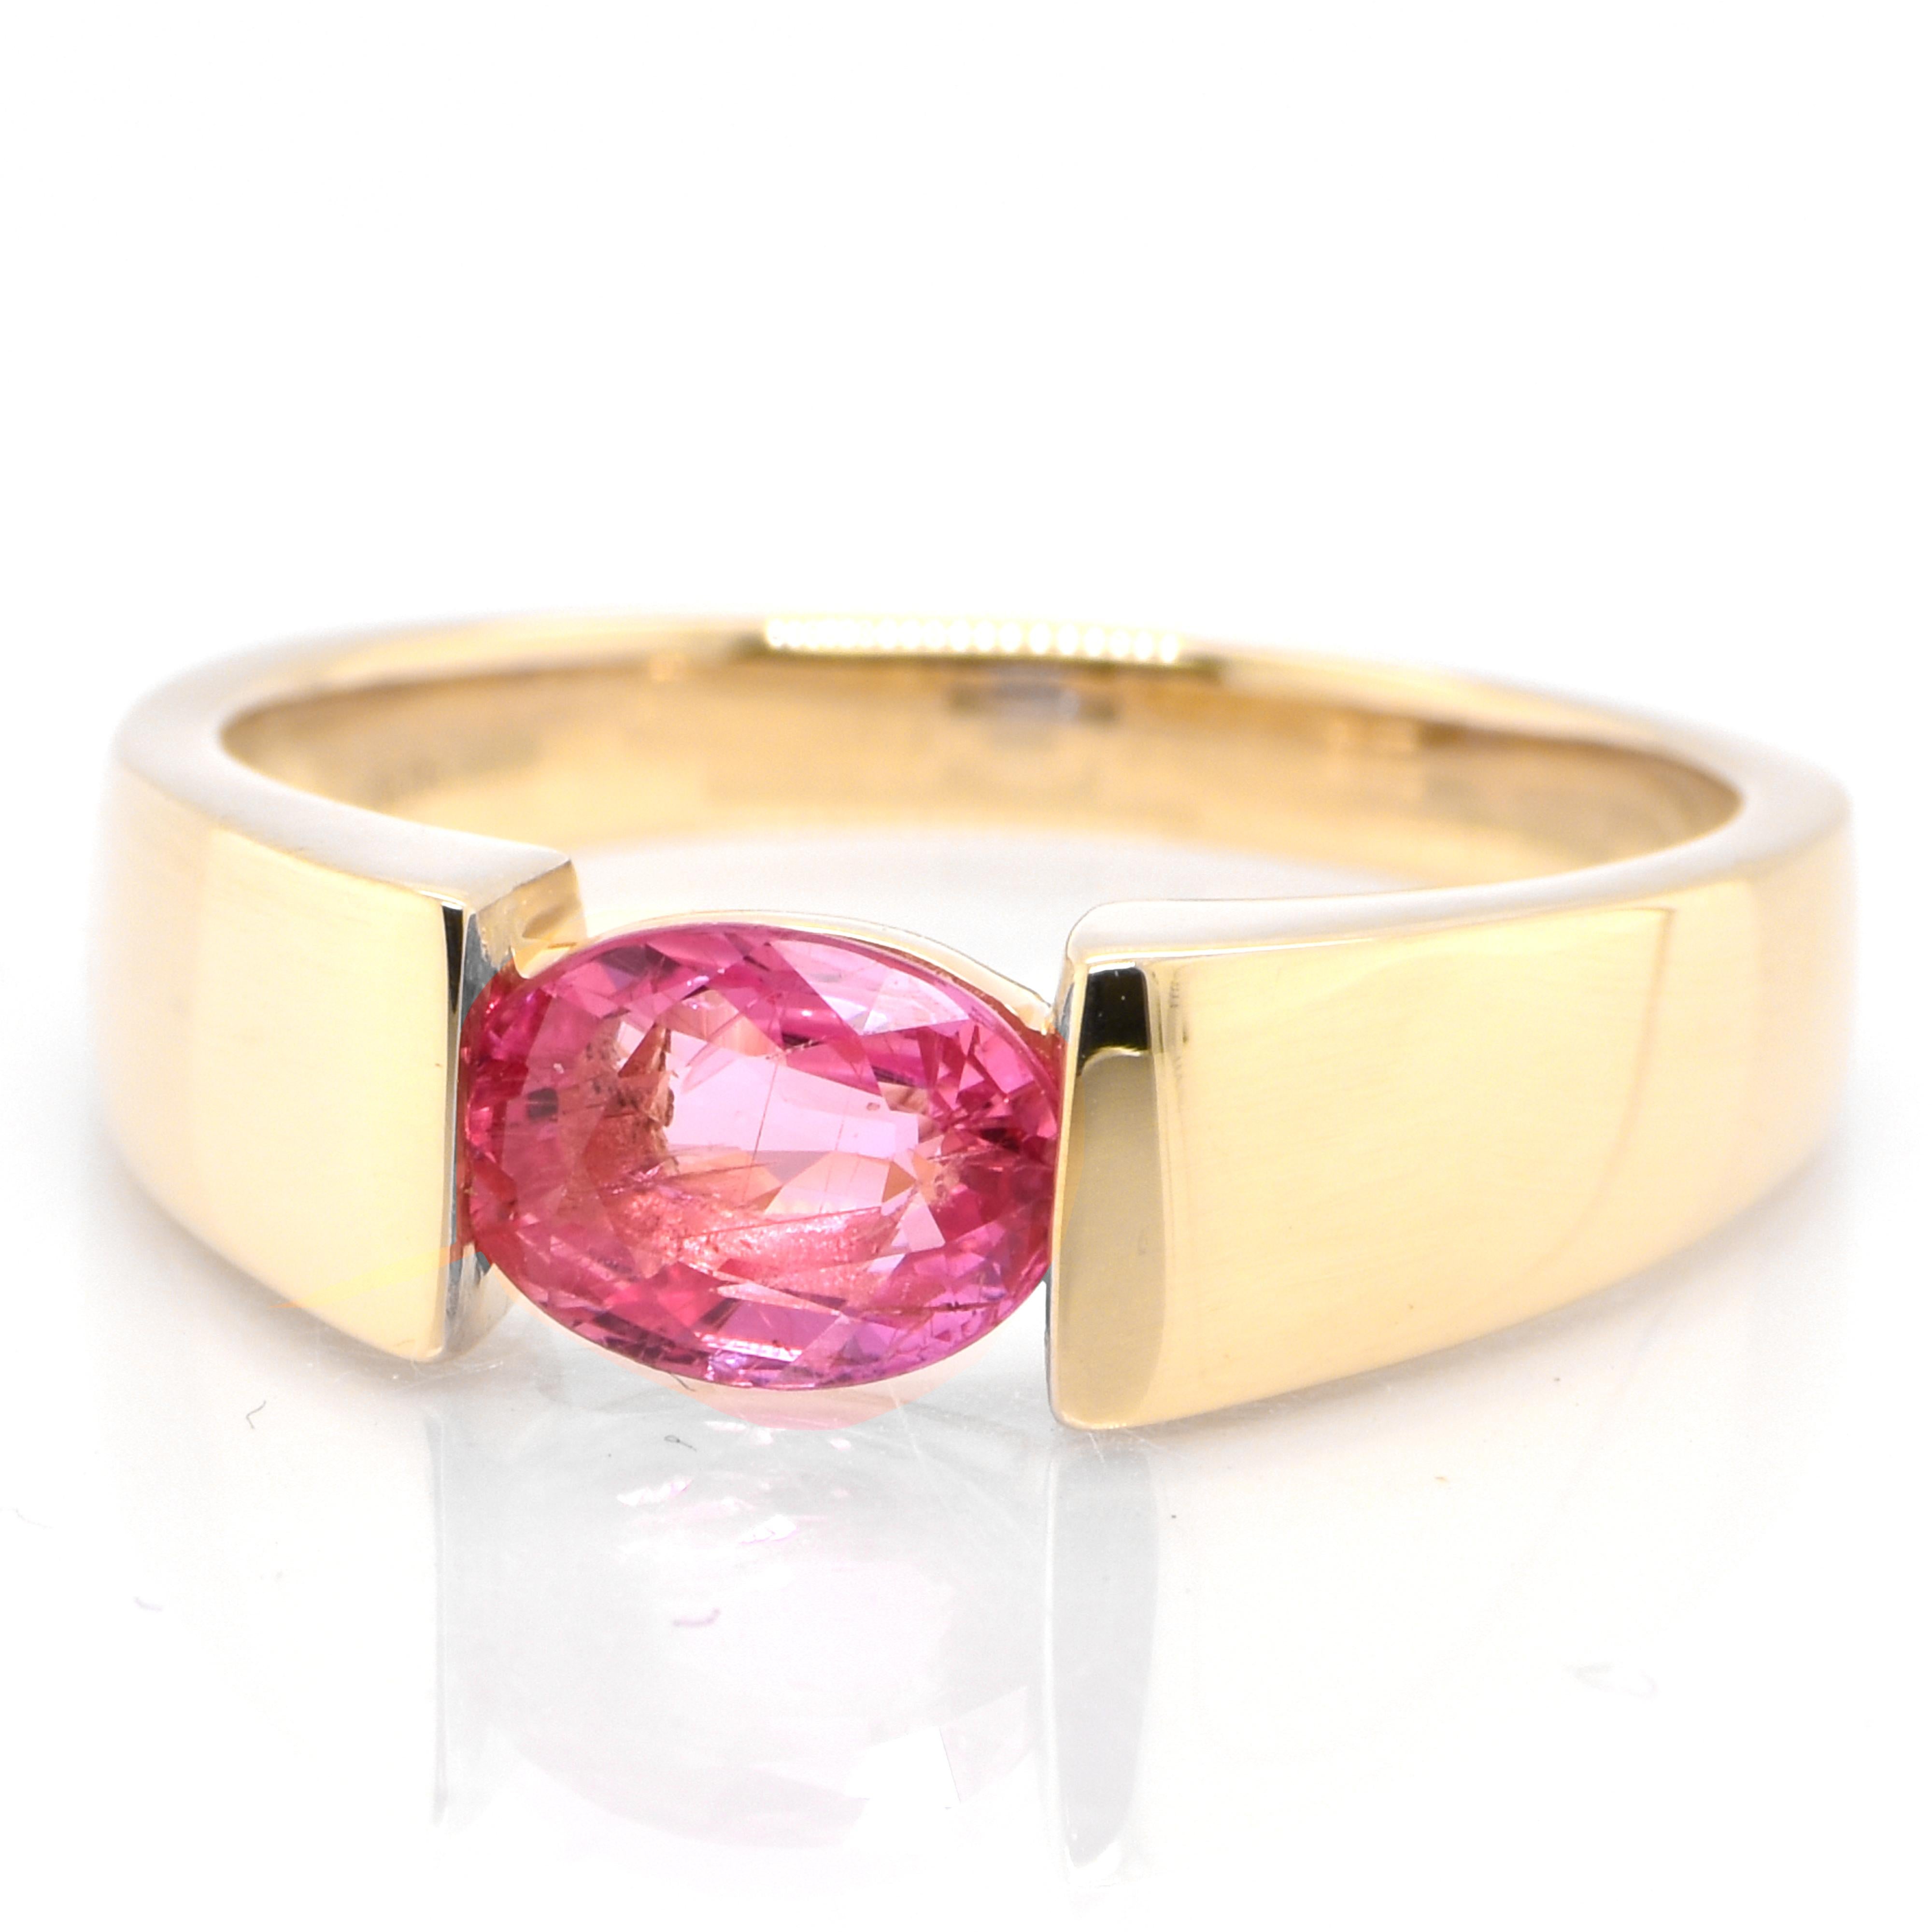 Ein wunderschöner Ring mit einem natürlichen Padparadscha-Saphir von 0,99 Karat, gefasst in 18 Karat Gelbgold. Saphire haben eine außergewöhnliche Haltbarkeit - sie zeichnen sich durch Härte, Zähigkeit und Beständigkeit aus, was sie zu einem sehr